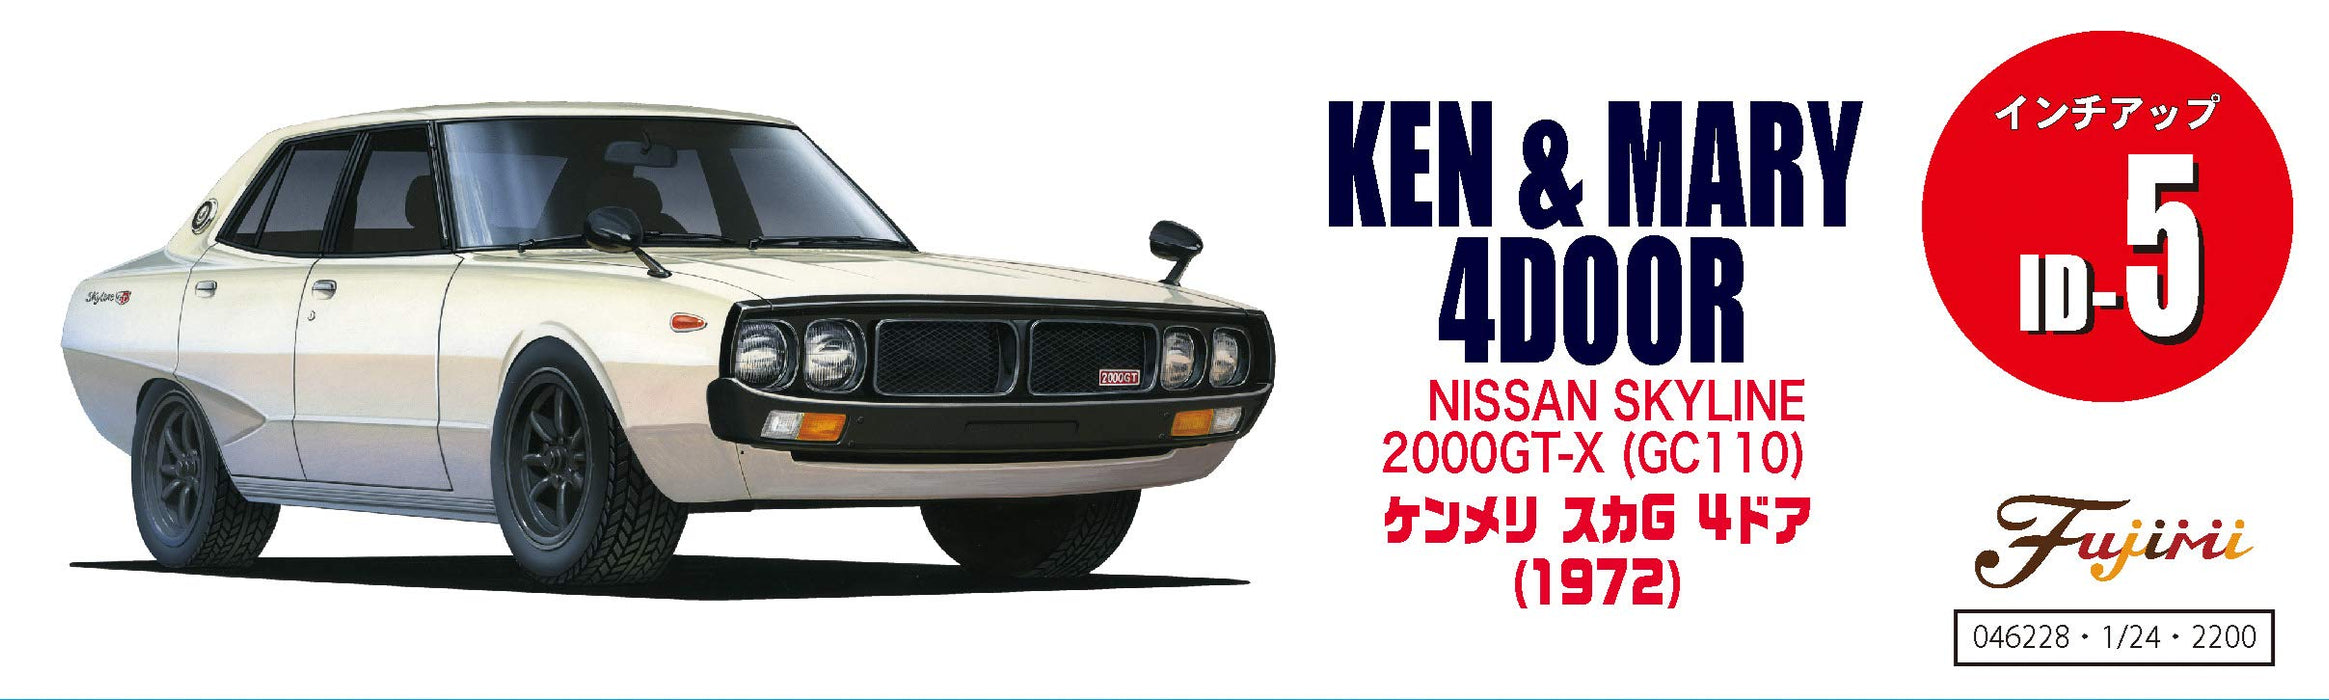 Fujimi Inch Up 1/24 Nr. 5 Nissan Ken und Mary 4-türiger Skyline 2000 Gt-X GC110, klassisches Auto im Maßstab 1:24